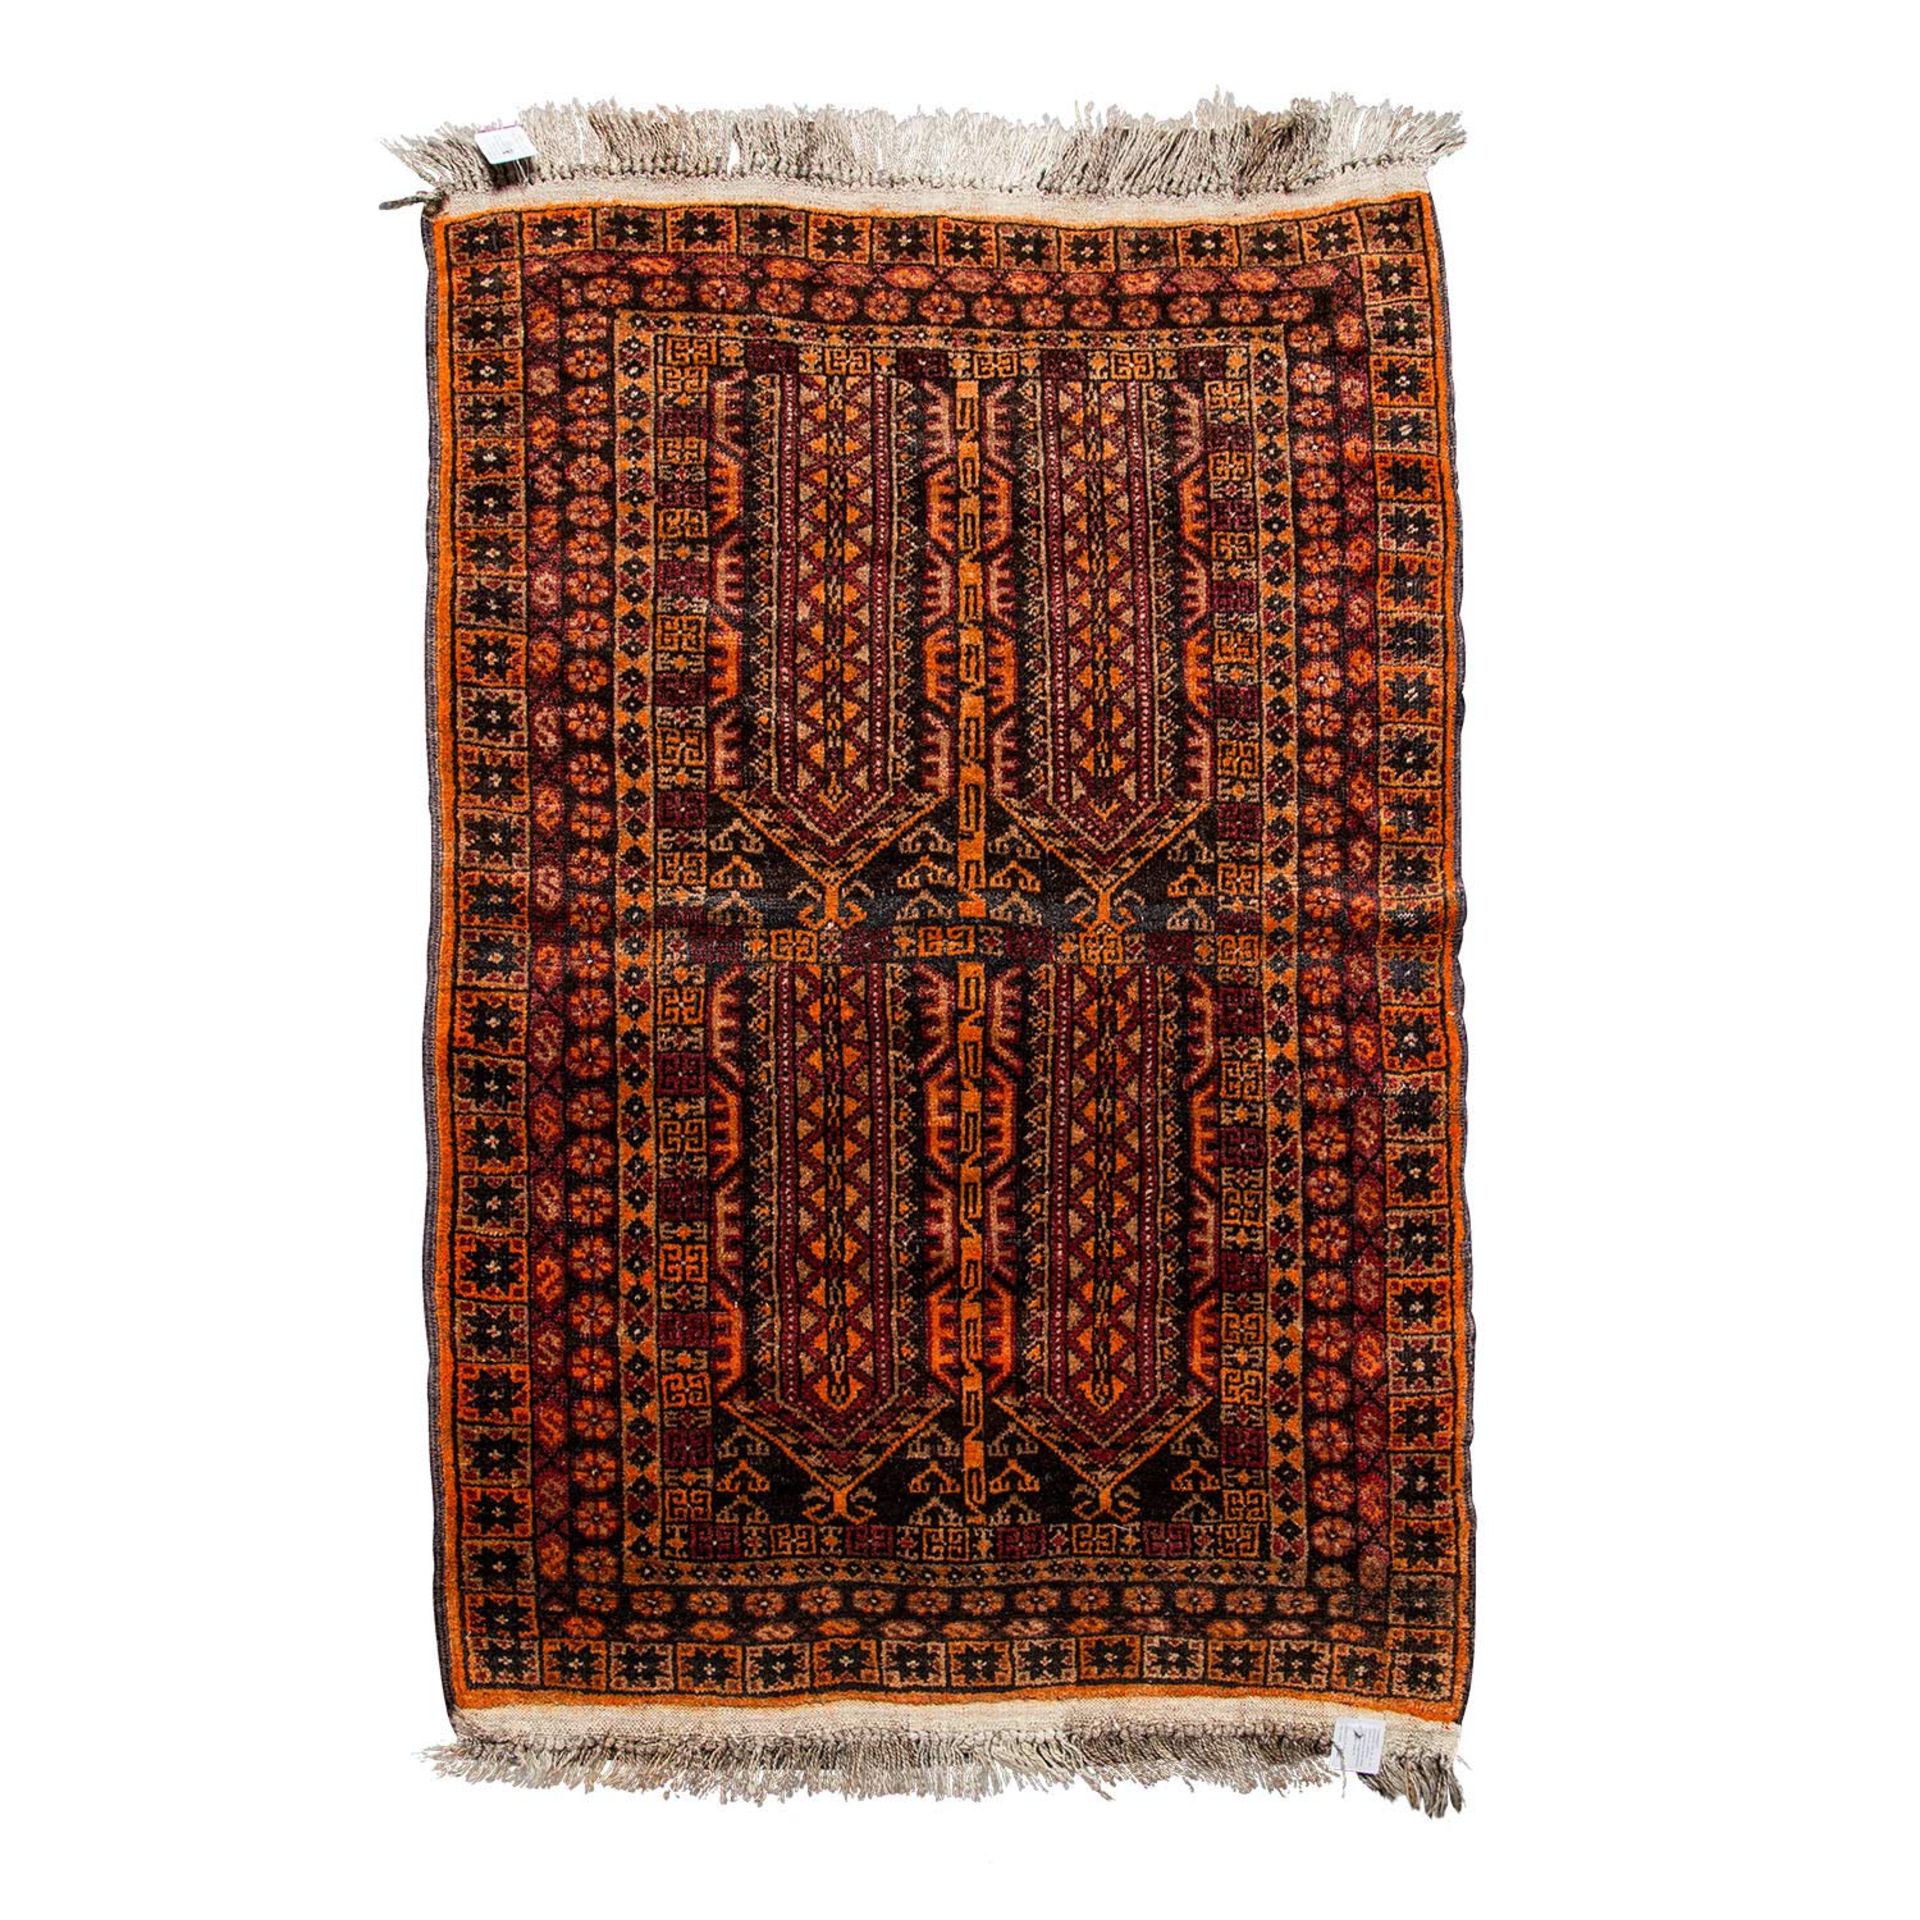 Orientteppich. AFGHANISTAN, 20. Jh., ca. 125x85 cm.Dörfliche Knüpfarbeit aus reiner Wolle, gemustert